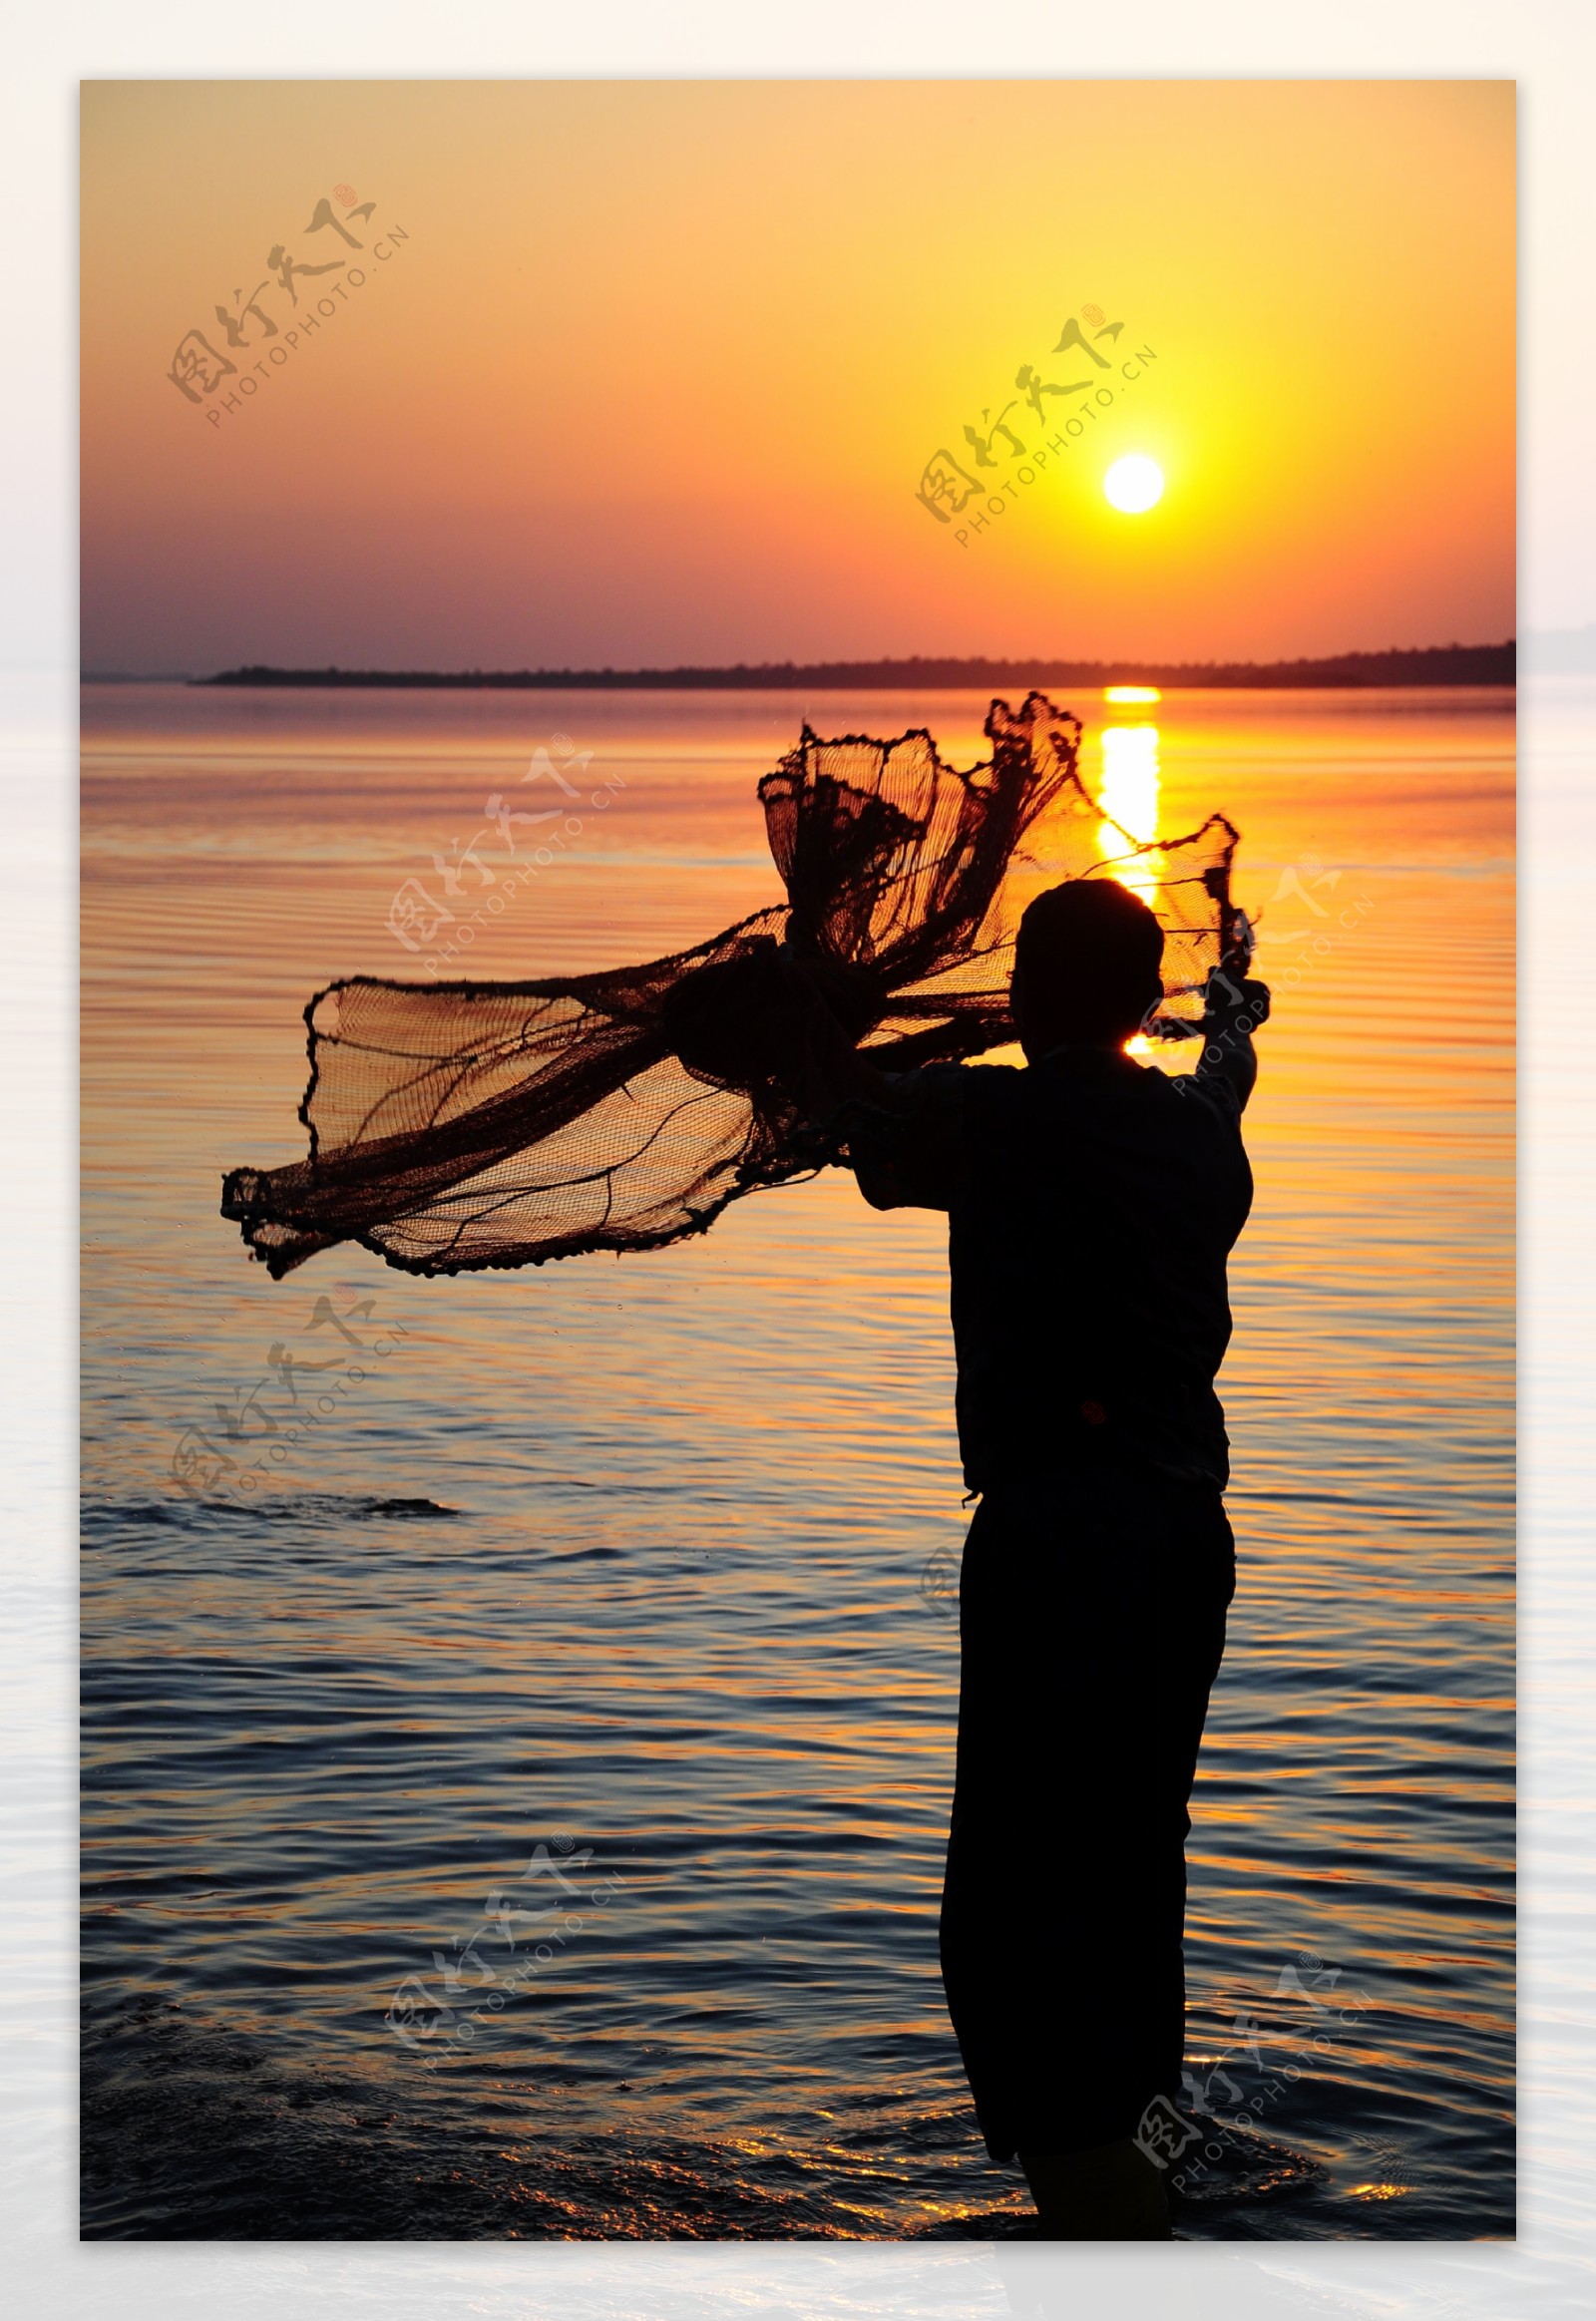 夕阳下渔翁捕鱼高清图